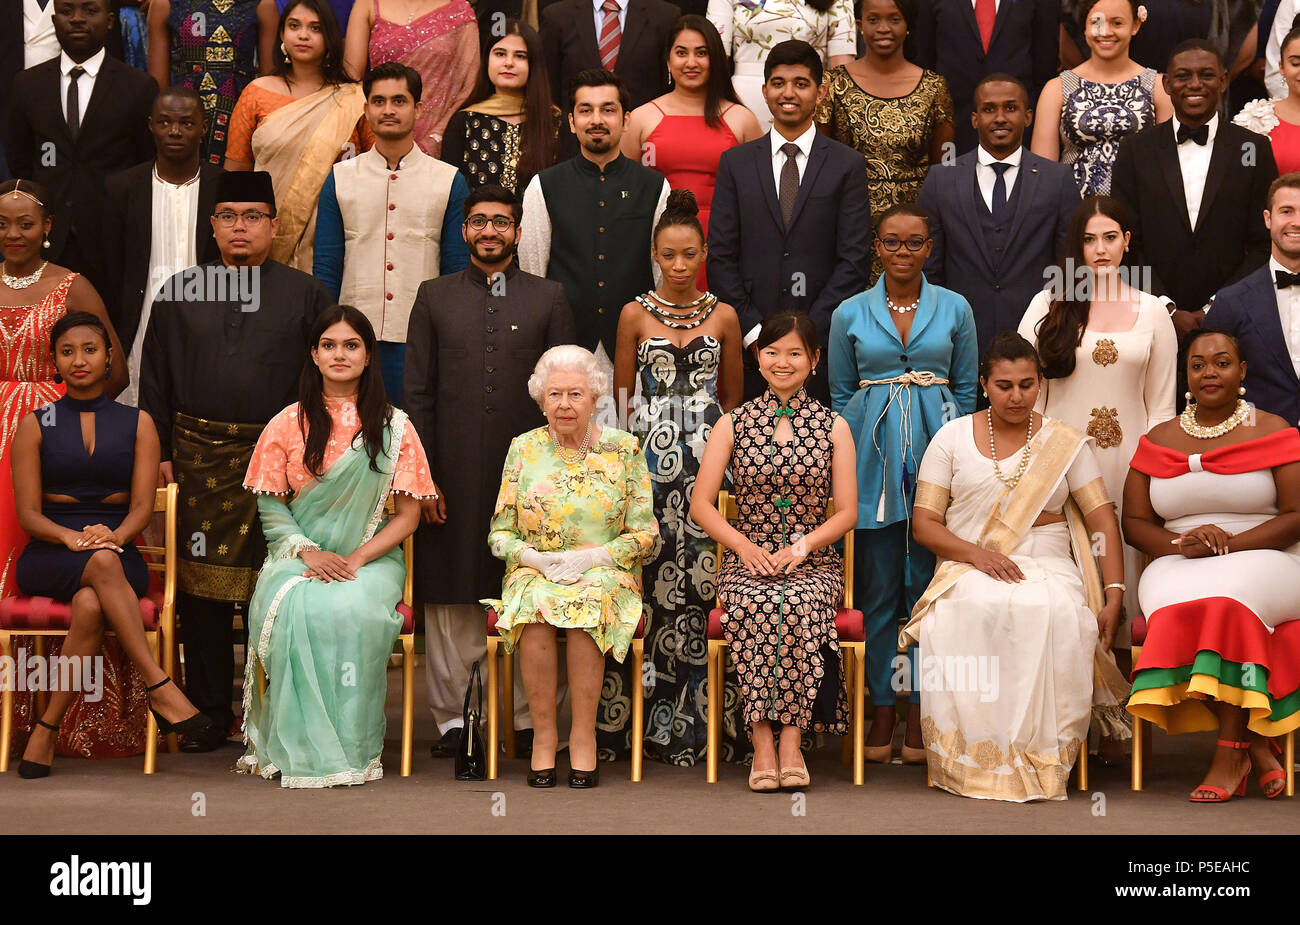 Königin Elizabeth II (Mitte vorne) verbindet einige der Königin junge Führungskräfte, die ihre Auszeichnung am Buckingham Palace erhalten, für ein Gruppenfoto. Stockfoto